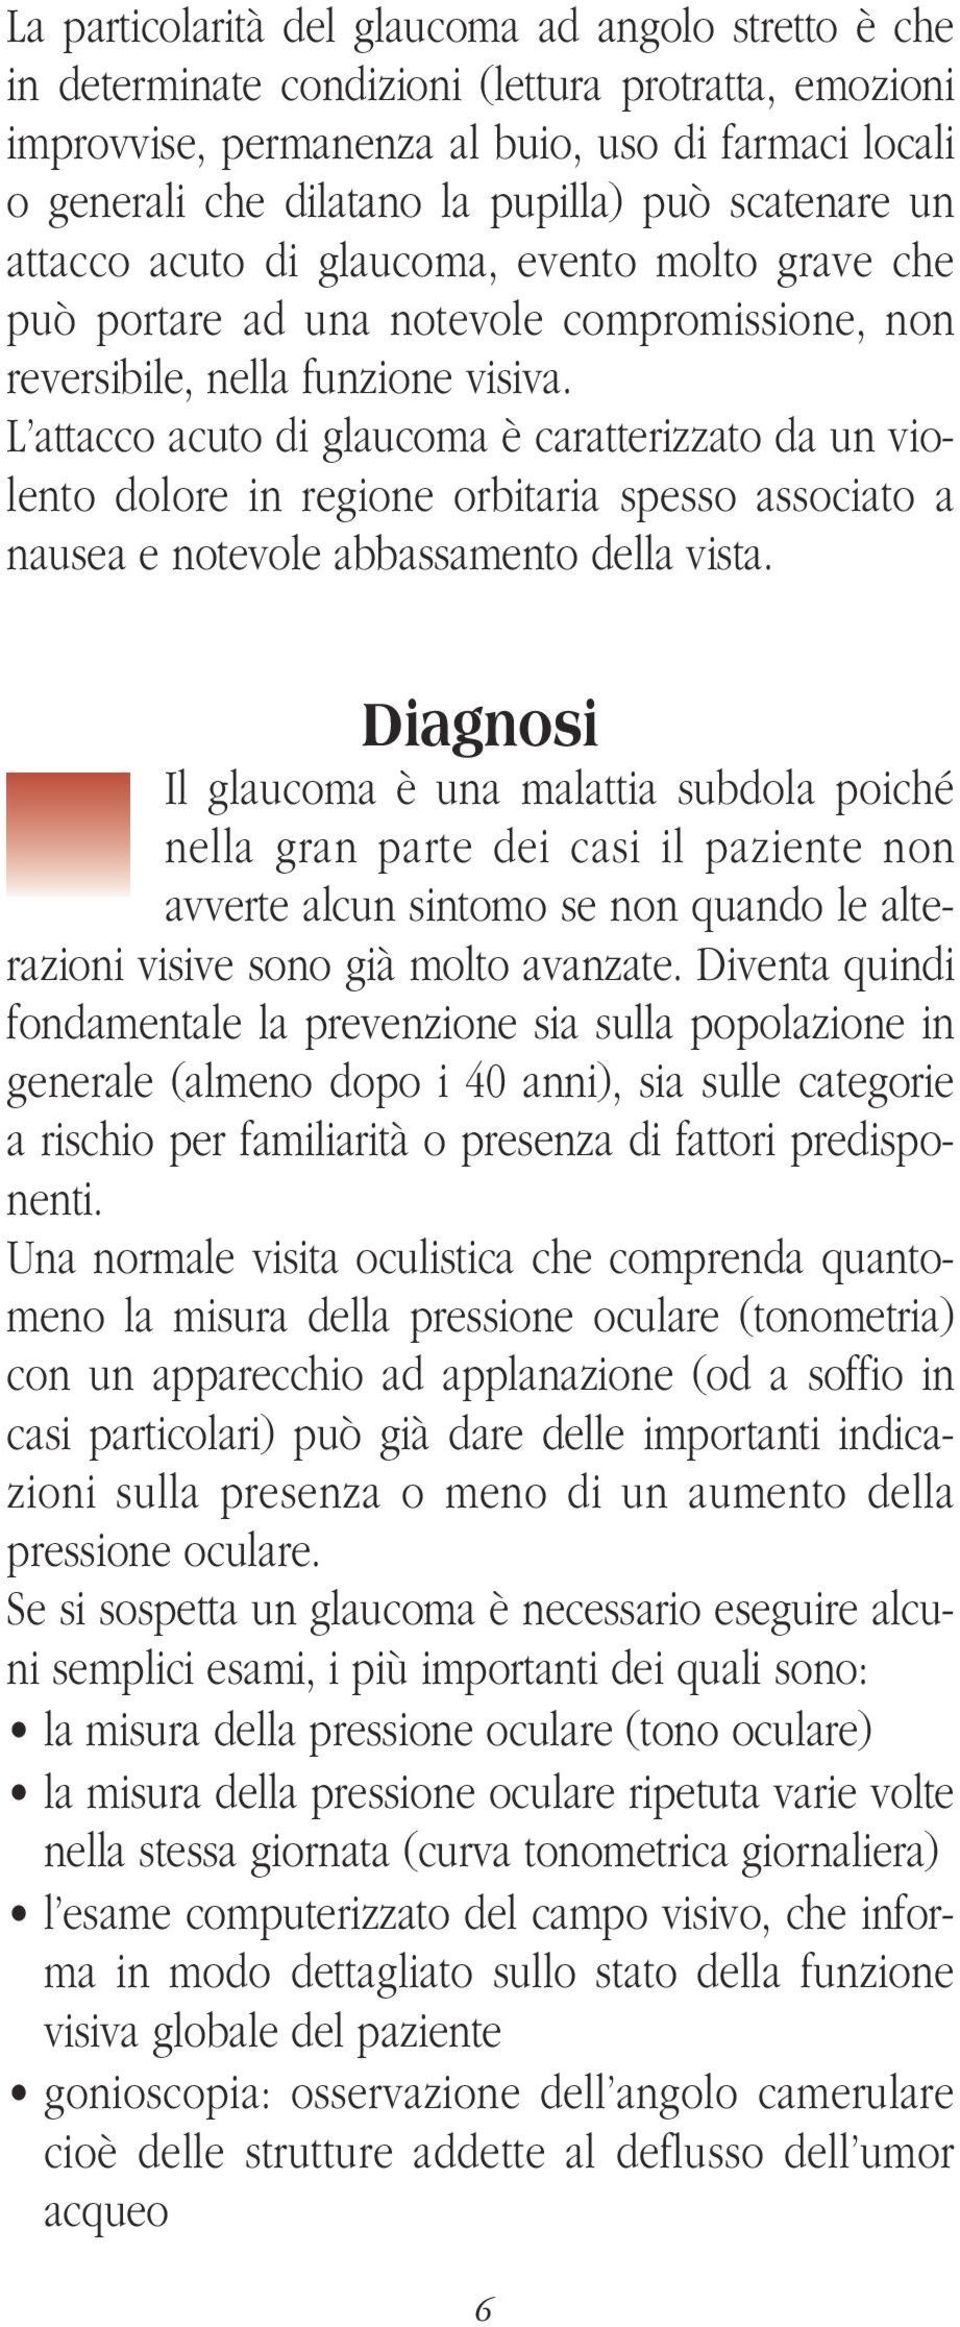 L attacco acuto di glaucoma è caratterizzato da un violento dolore in regione orbitaria spesso associato a nausea e notevole abbassamento della vista.